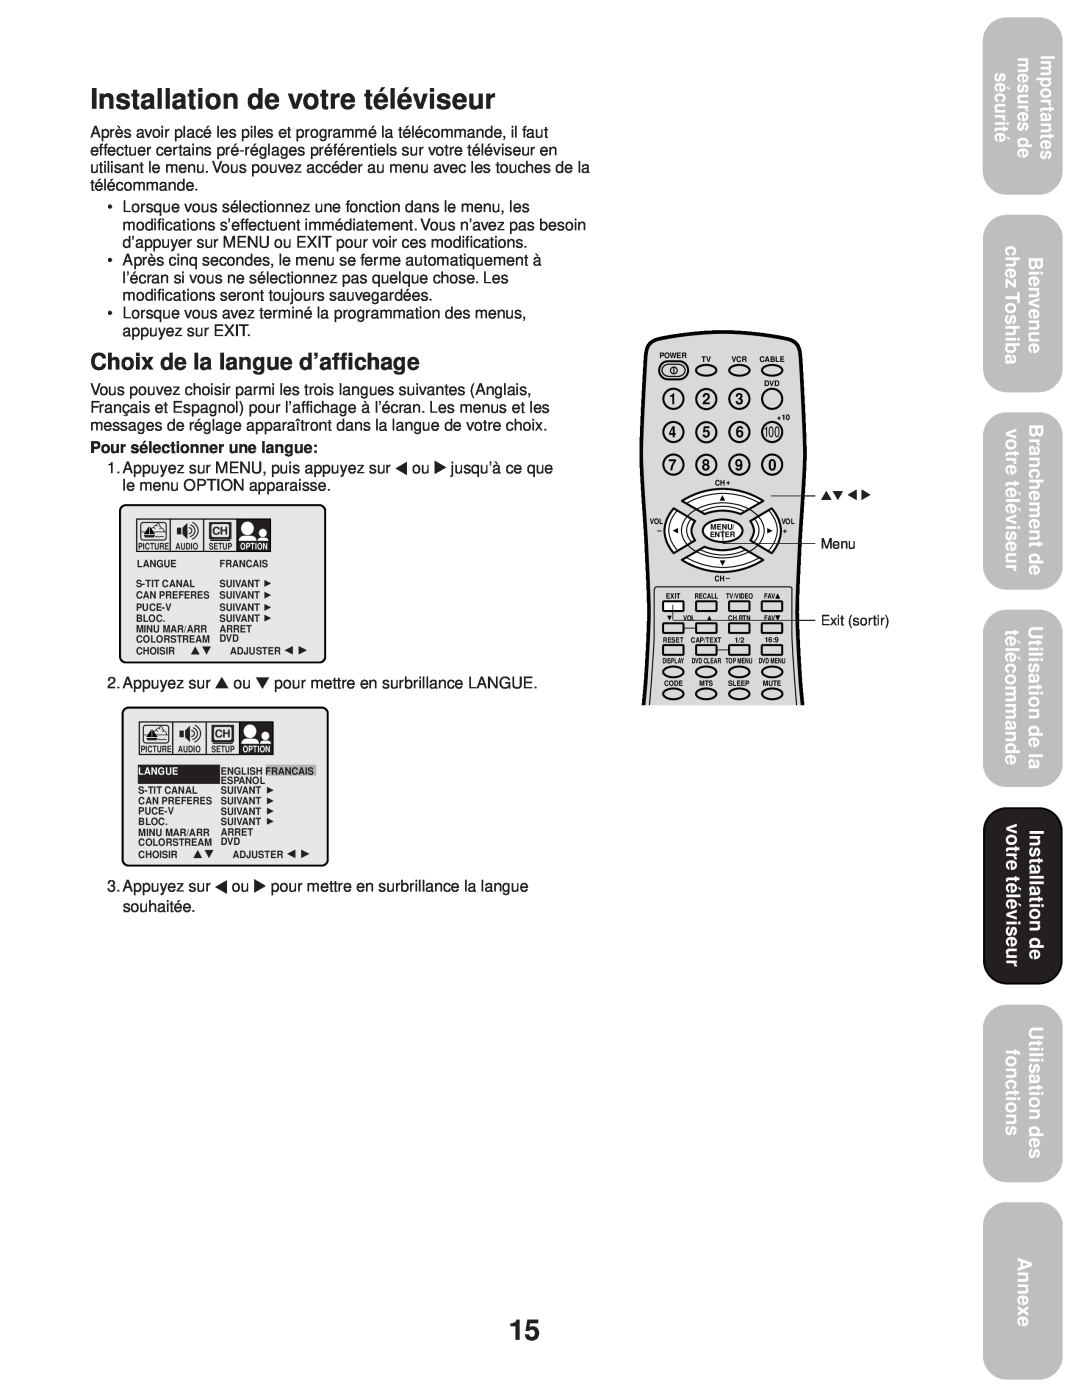 Toshiba 20AF43 Installation de votre téléviseur, Choix de la langue d’affichage, Bienvenue, télécommande, fonctions 